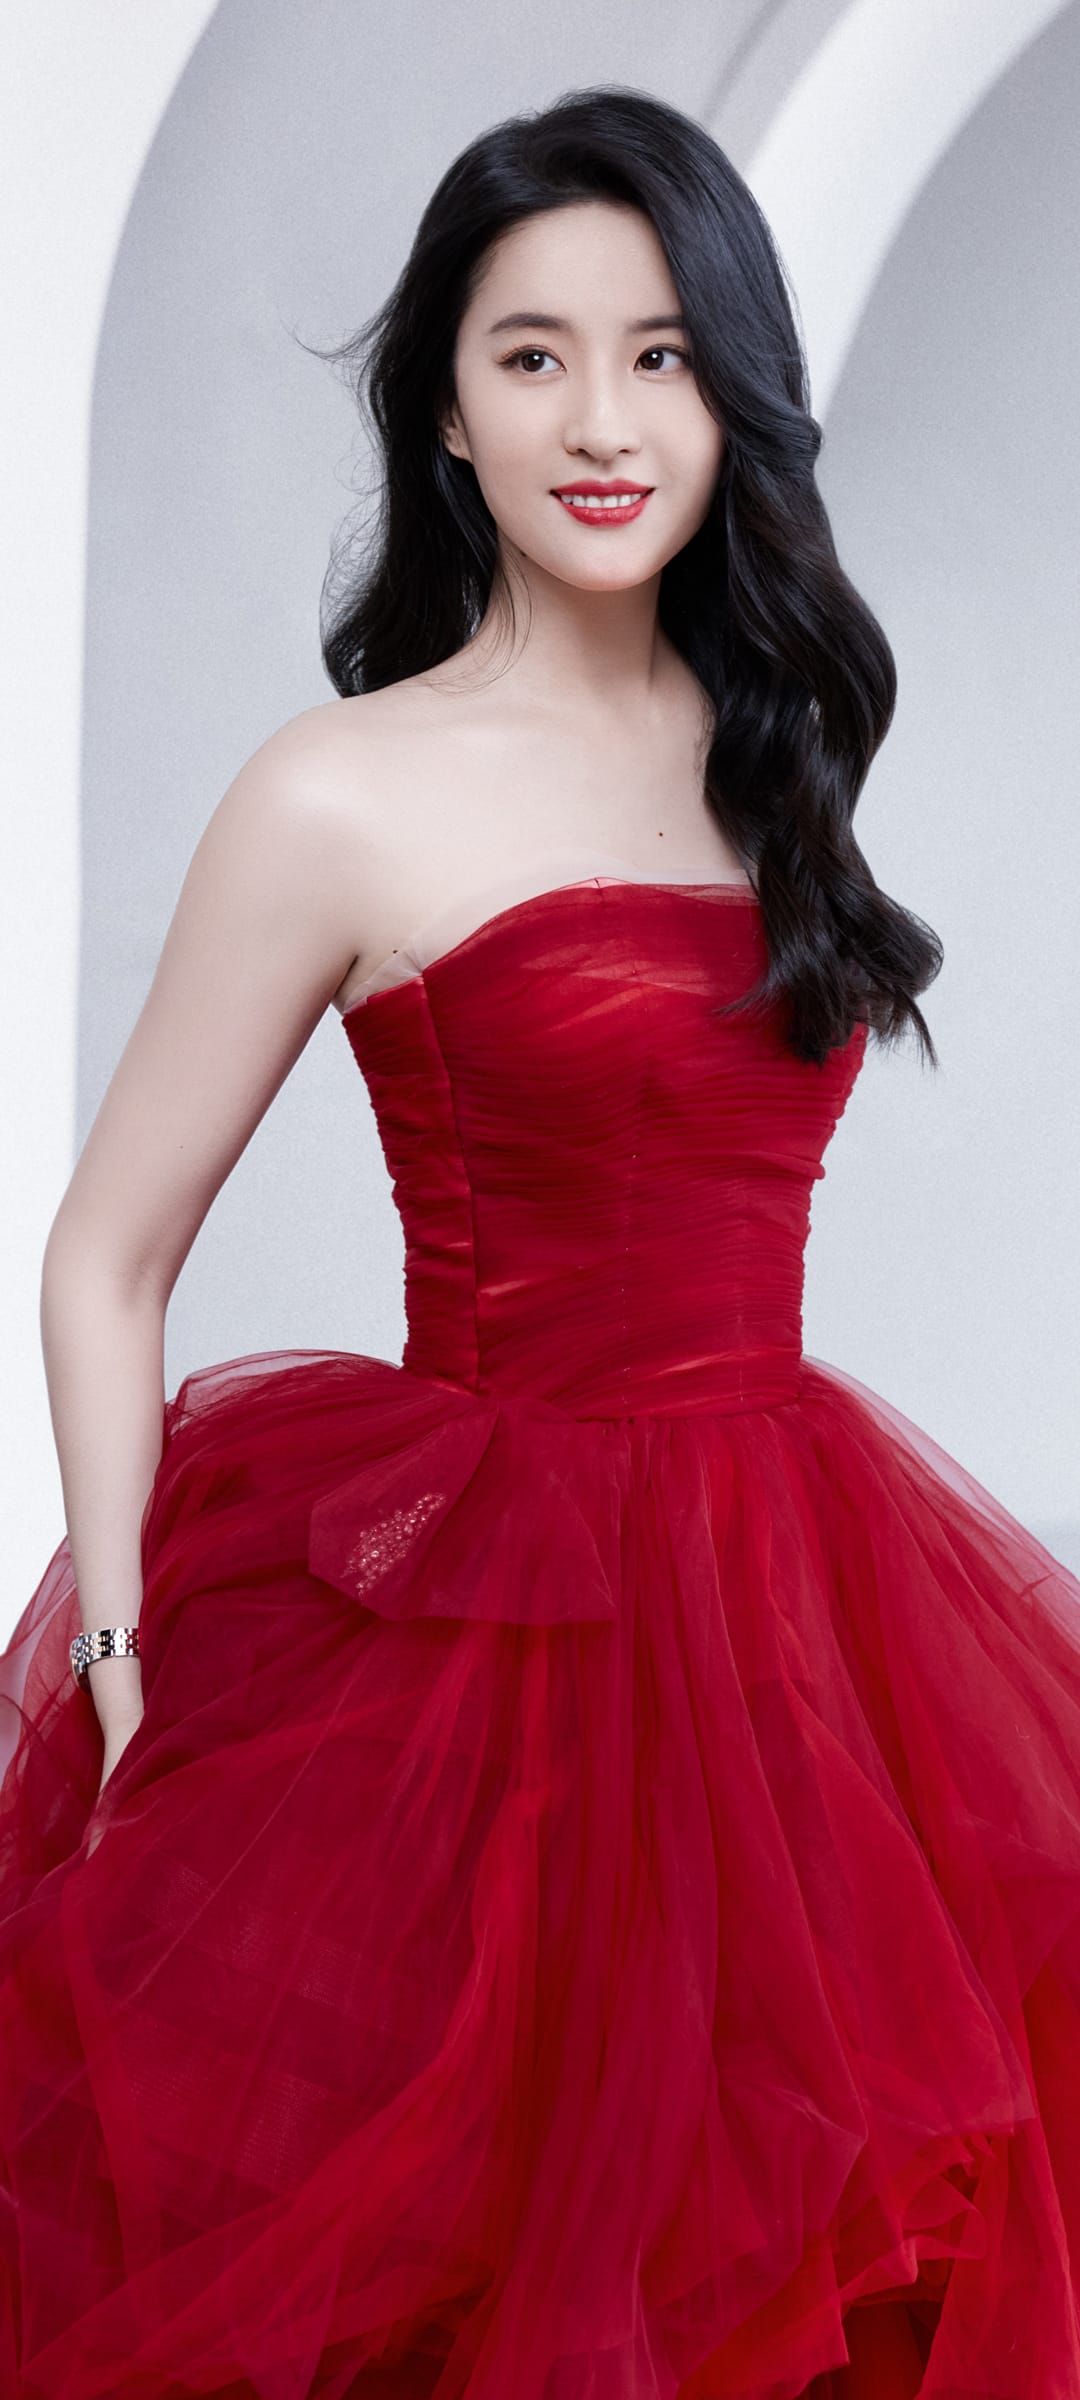 刘亦菲红色裙子多套服饰美女手机壁纸